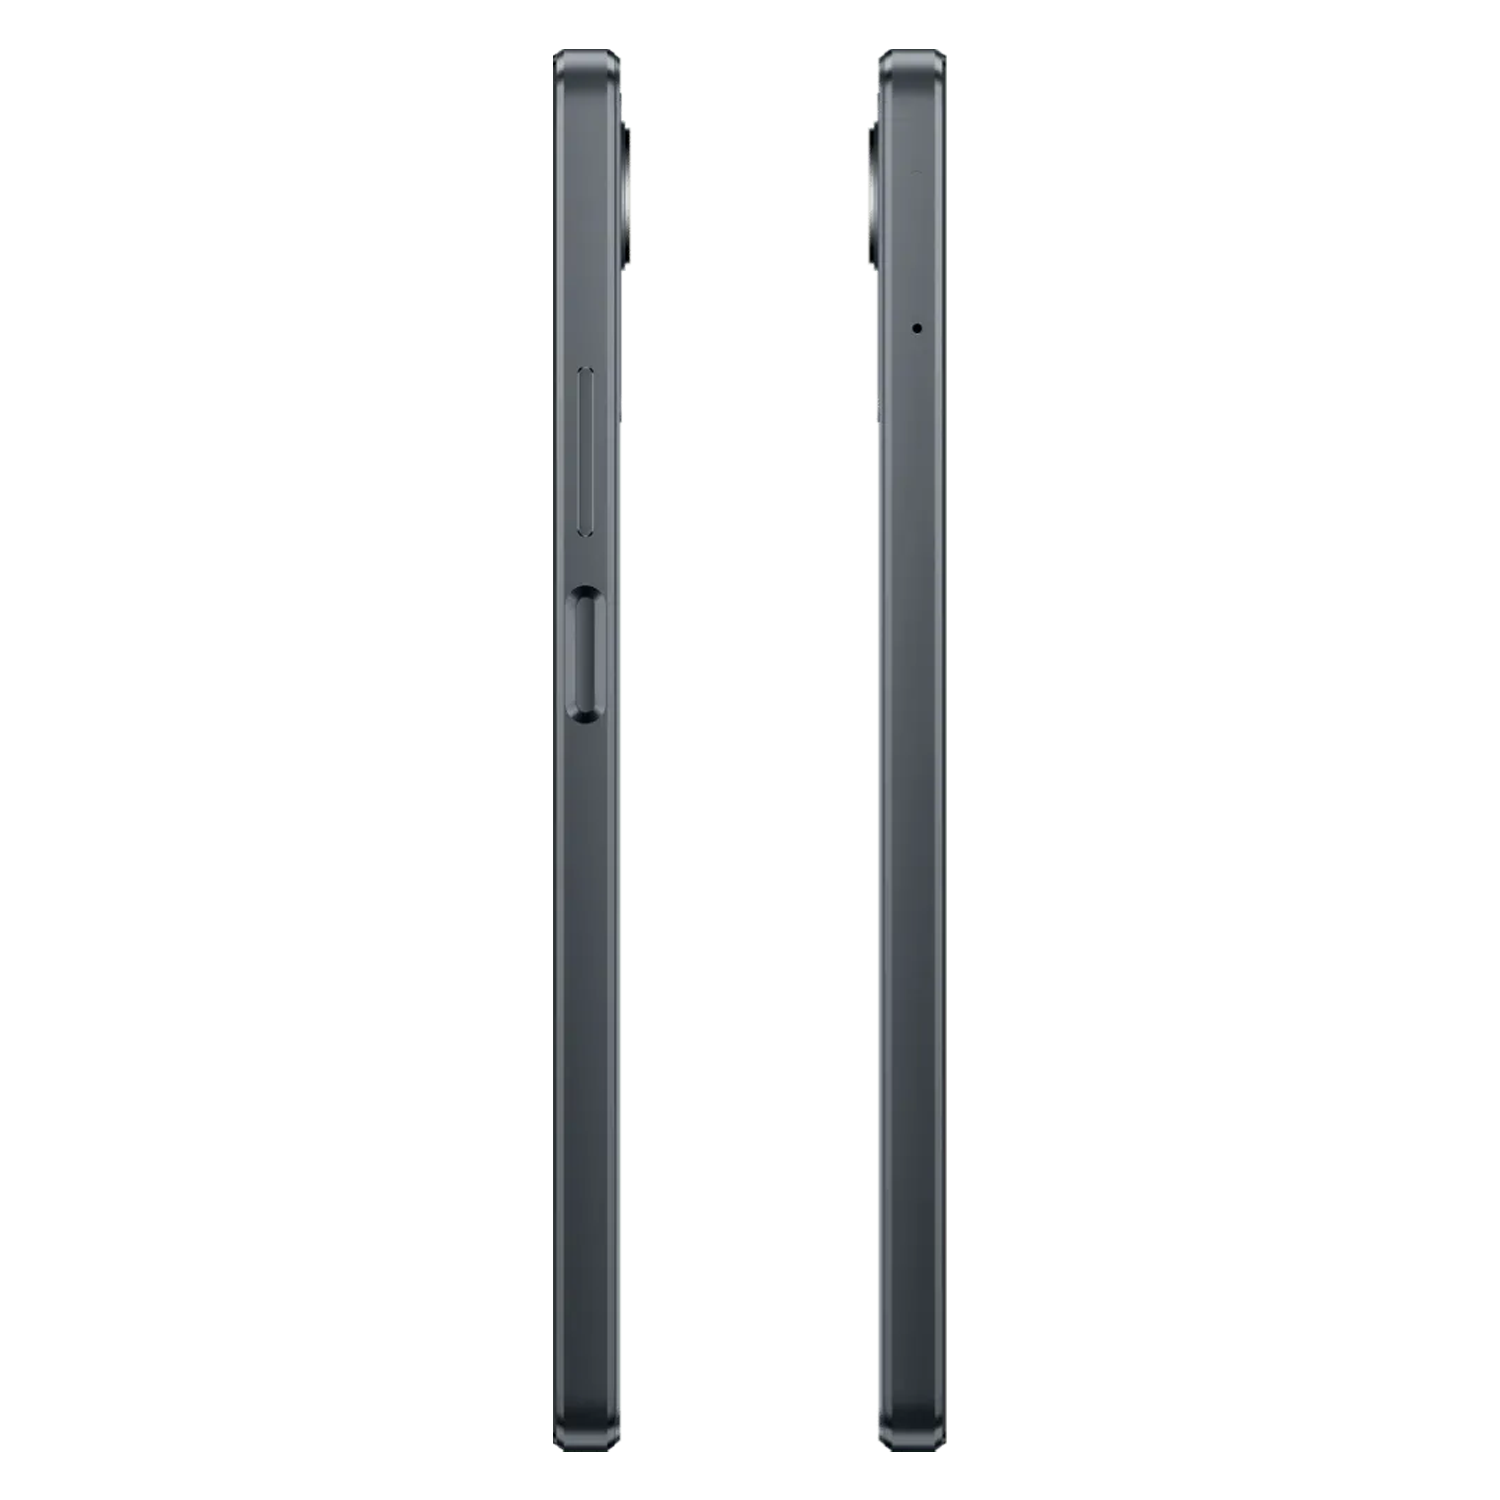 Celular Realme C30S RMX3690 Dual SIM / 2GB RAM / 32GB / Tela 6.5" / Câmeras 8MP e 5MP - Stripe Black (Anatel)